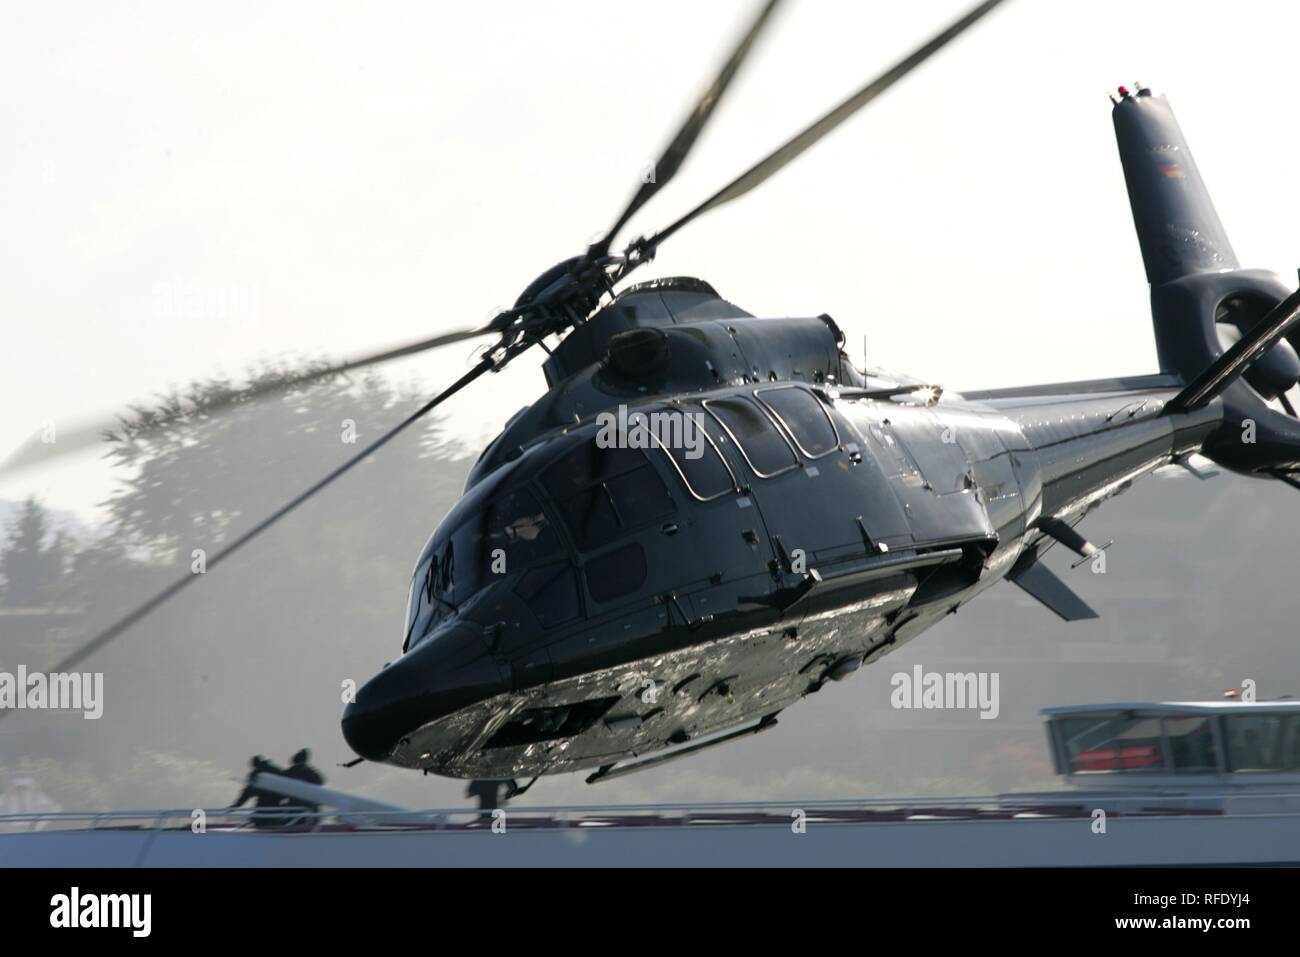 Hélicoptère Eurocopter EC 155 Police hélicoptère de transport, Duesseldorf, Allemagne Banque D'Images